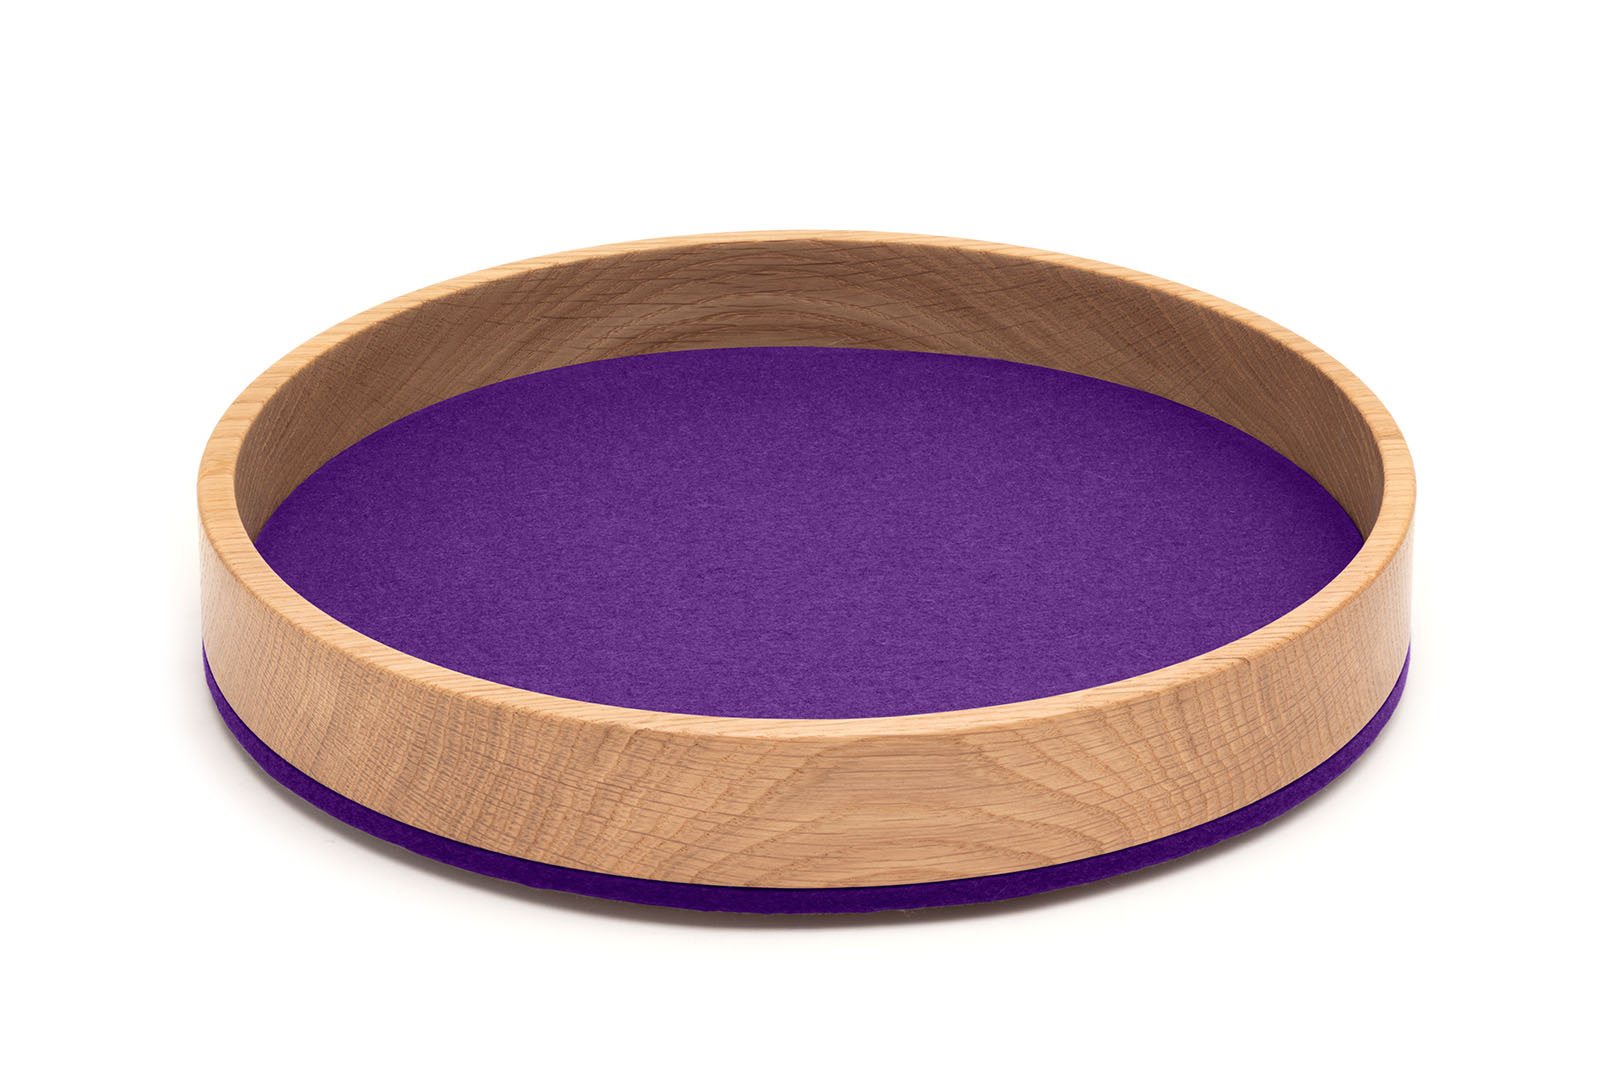 Dein Bowl/ Tray rund (Ø 26,5 cm) in der Farbe "Violett"